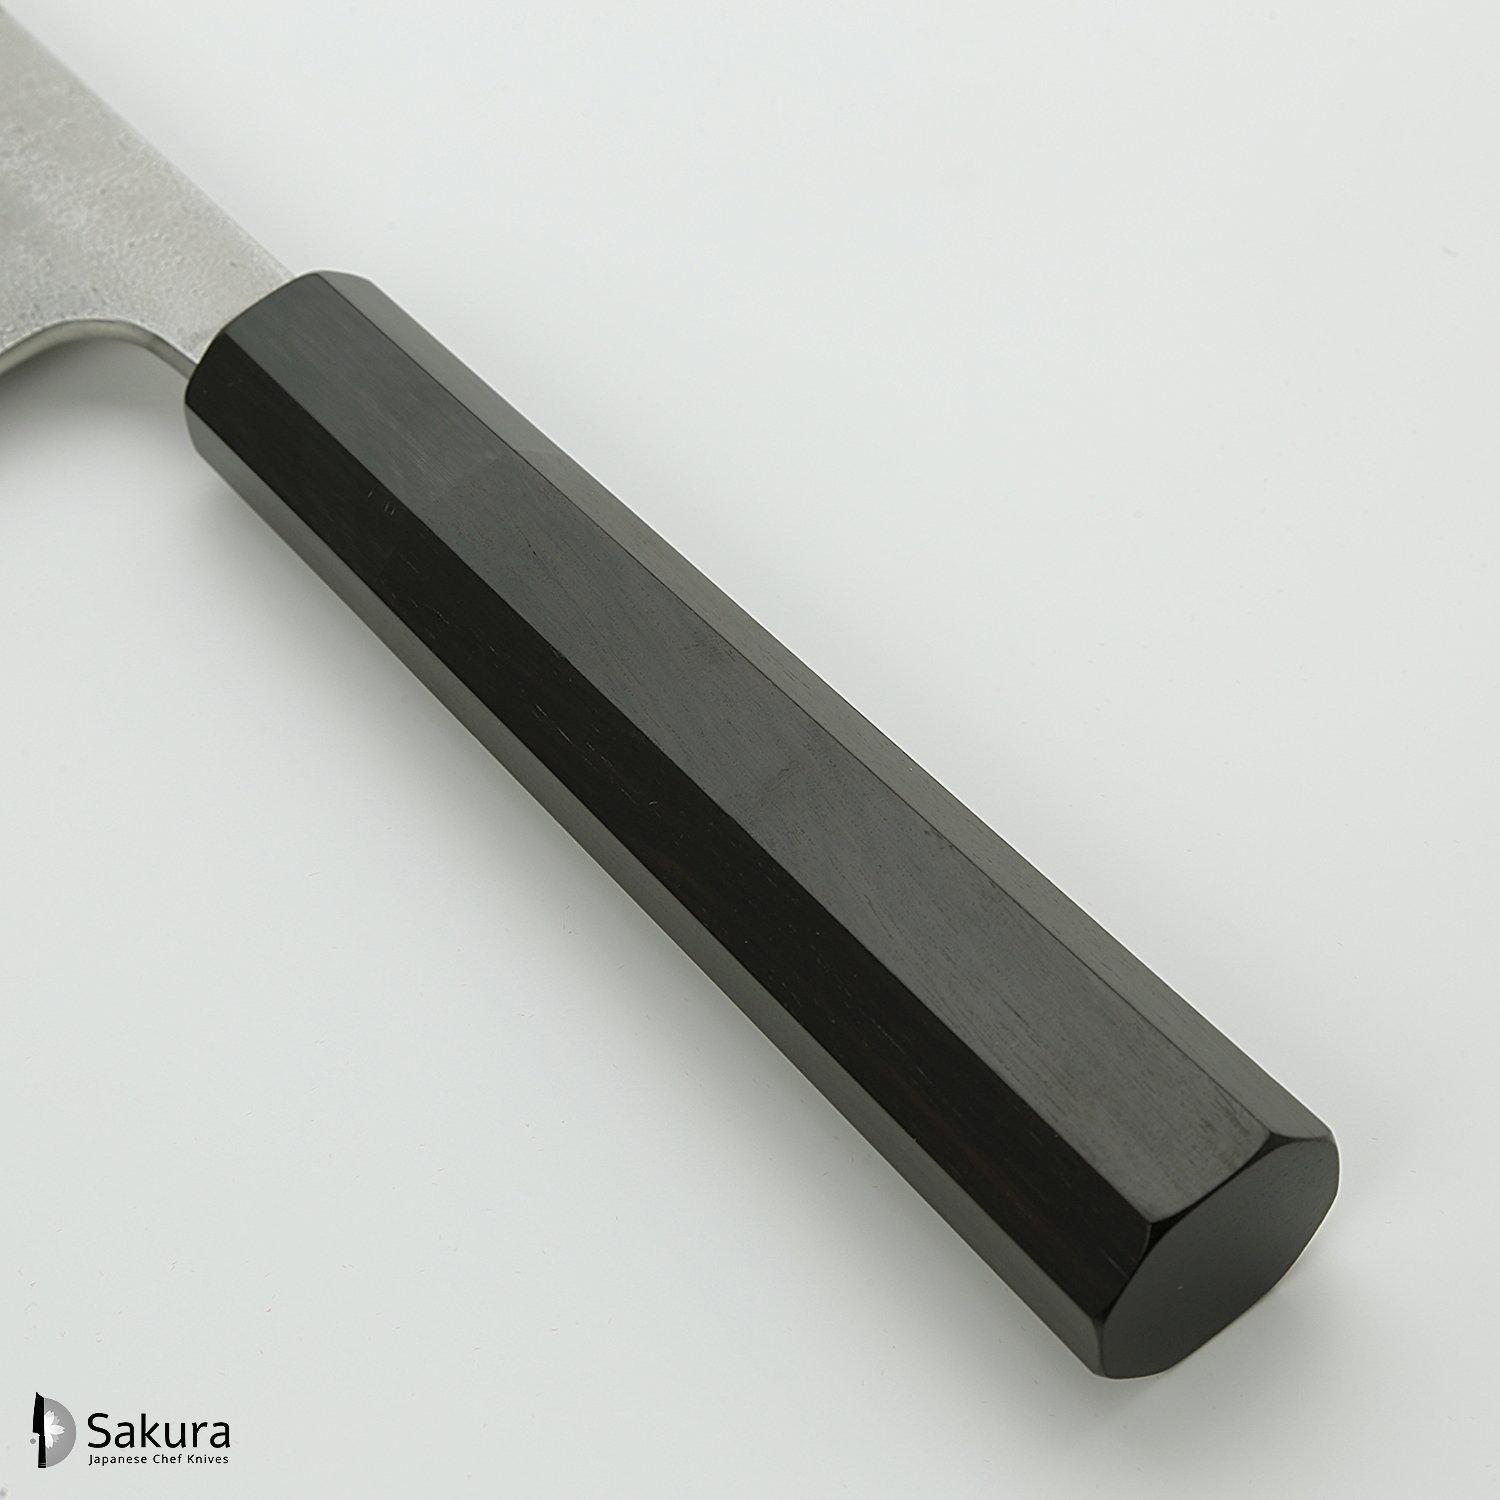 סכין שף רב-תכליתית גִּיוּטוֹ 270מ״מ מחושלת בעבודת יד 3 שכבות: פלדת פחמן יפנית מתקדמת מסוג SKD עטופה פלדת אל-חלד גימור קורורוצ׳י מט חיספוס טבעי יושיקאנה יפן